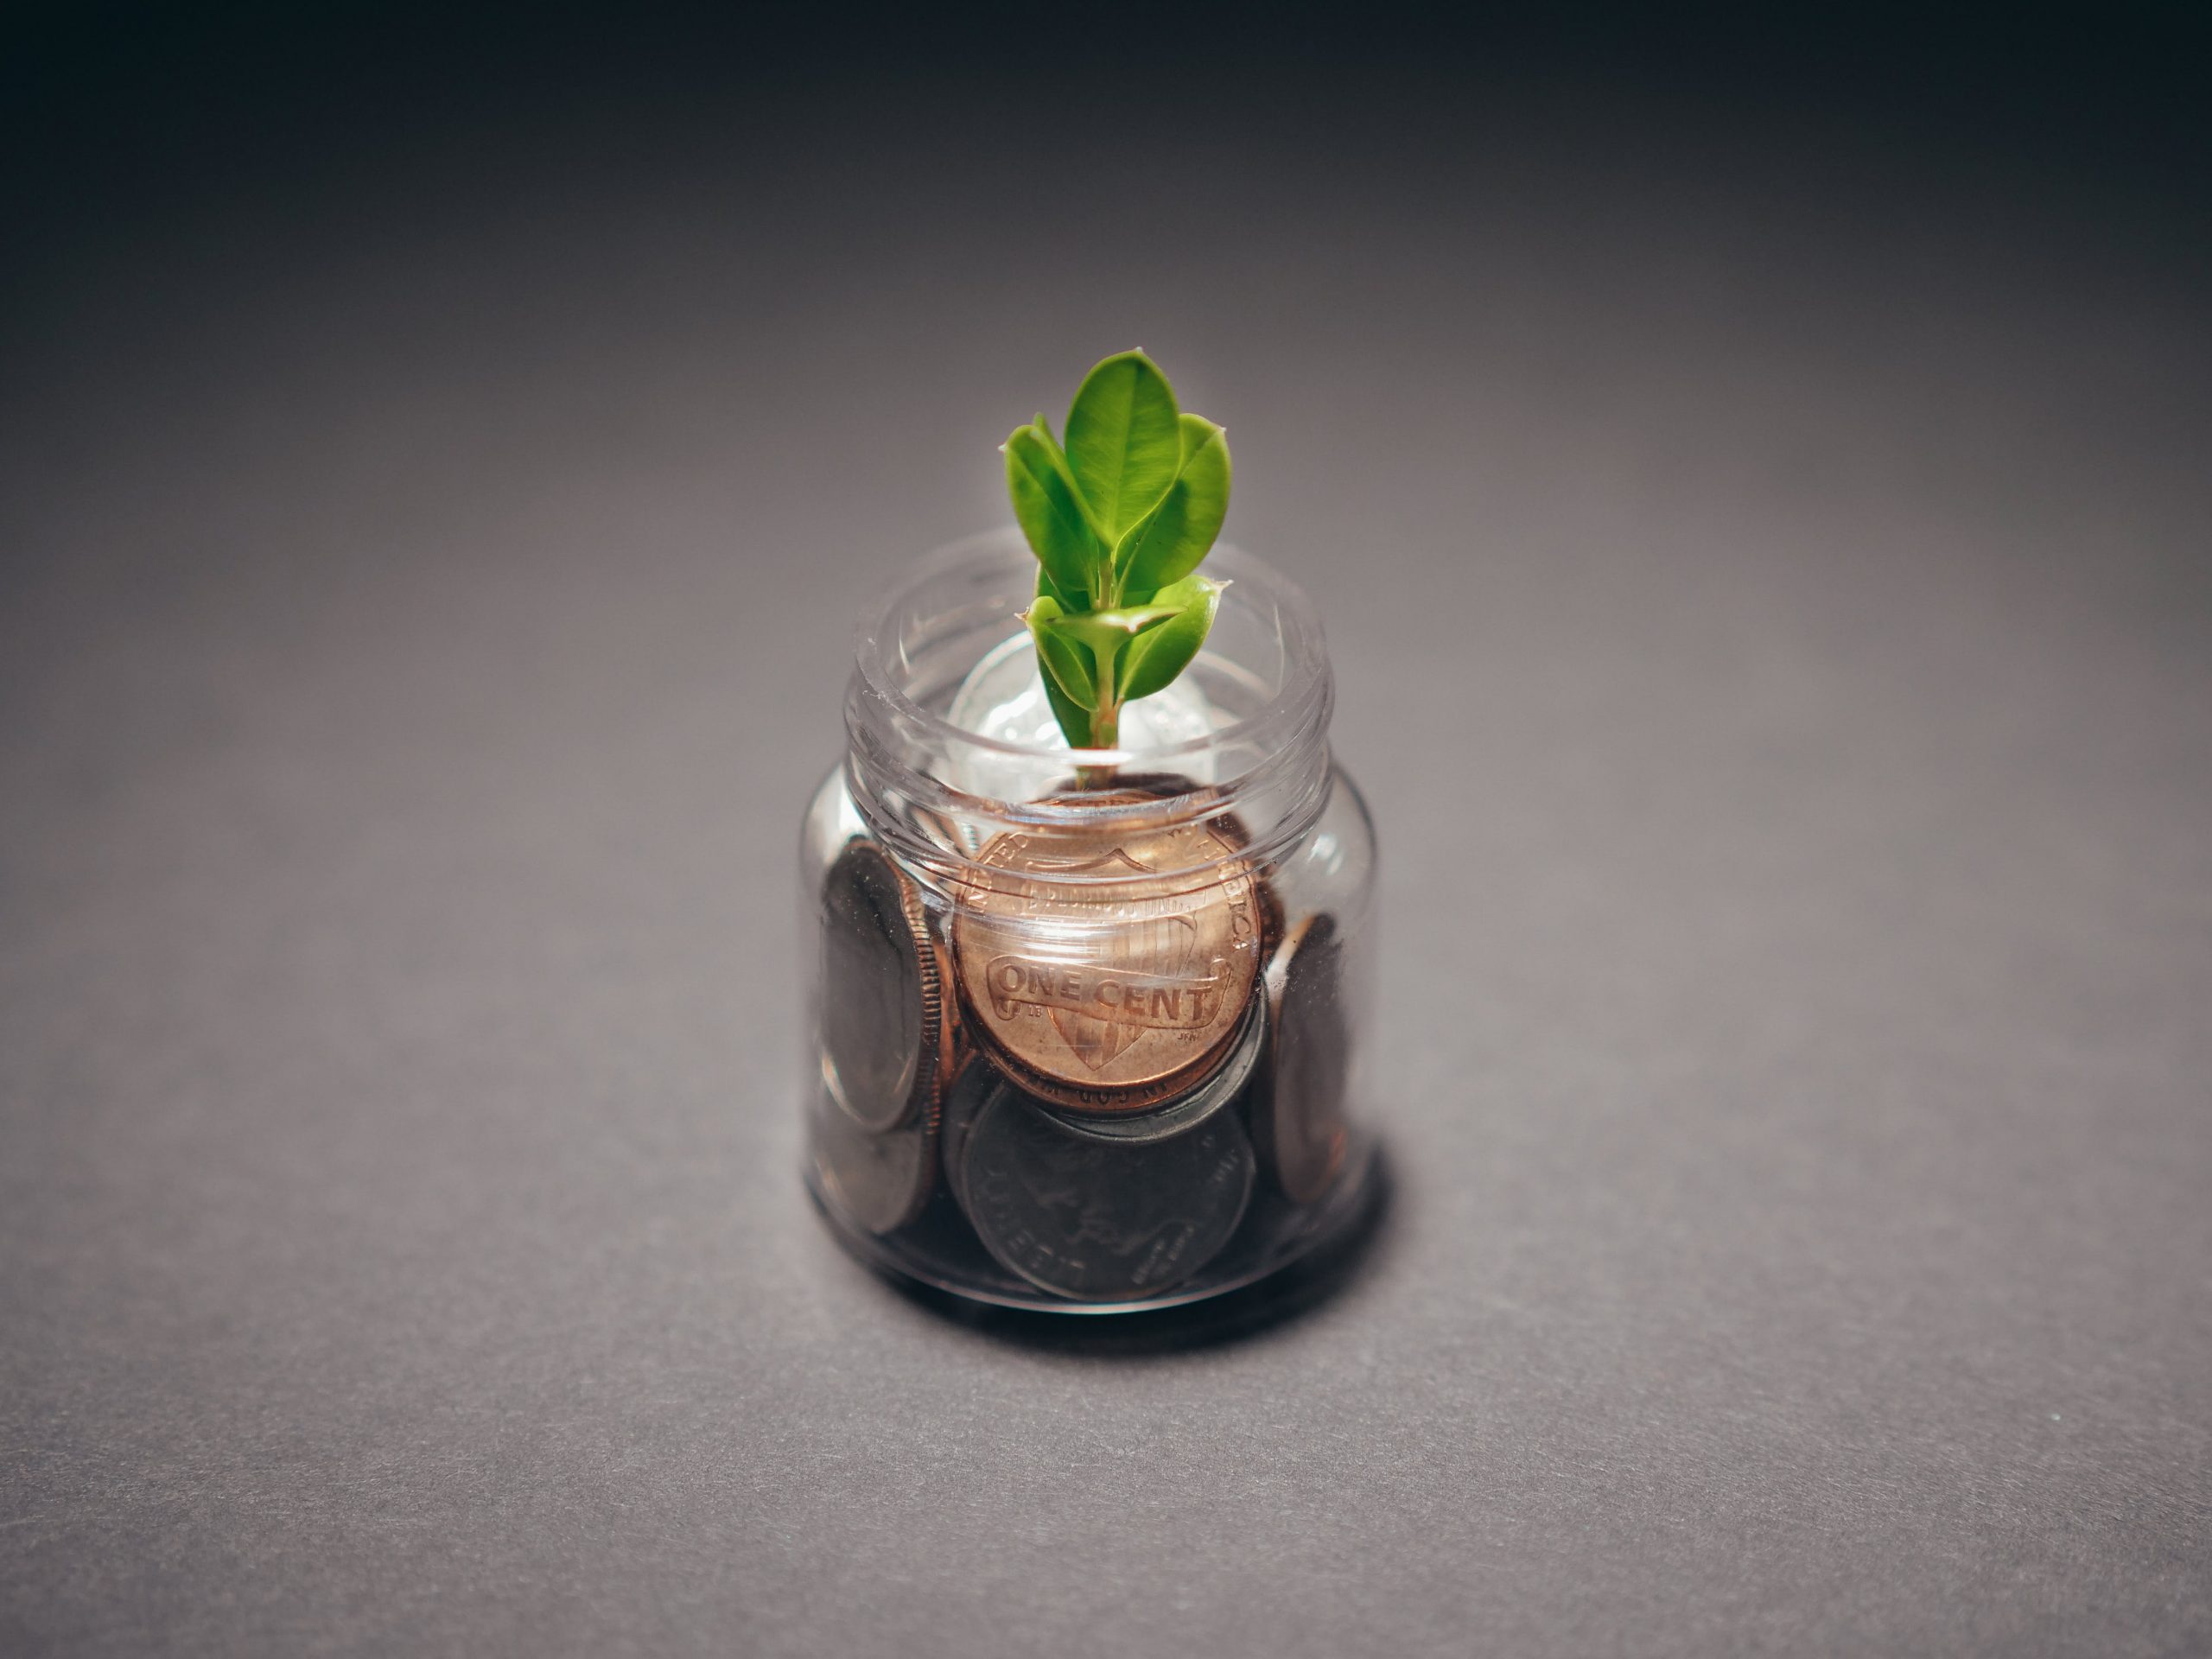 Unternehmensgründungsberatung: Eine junge Pflanze in einem Glas mit Münzen, was Unternehmensgründung und Unternehmensgründungsberatung symbolisiert